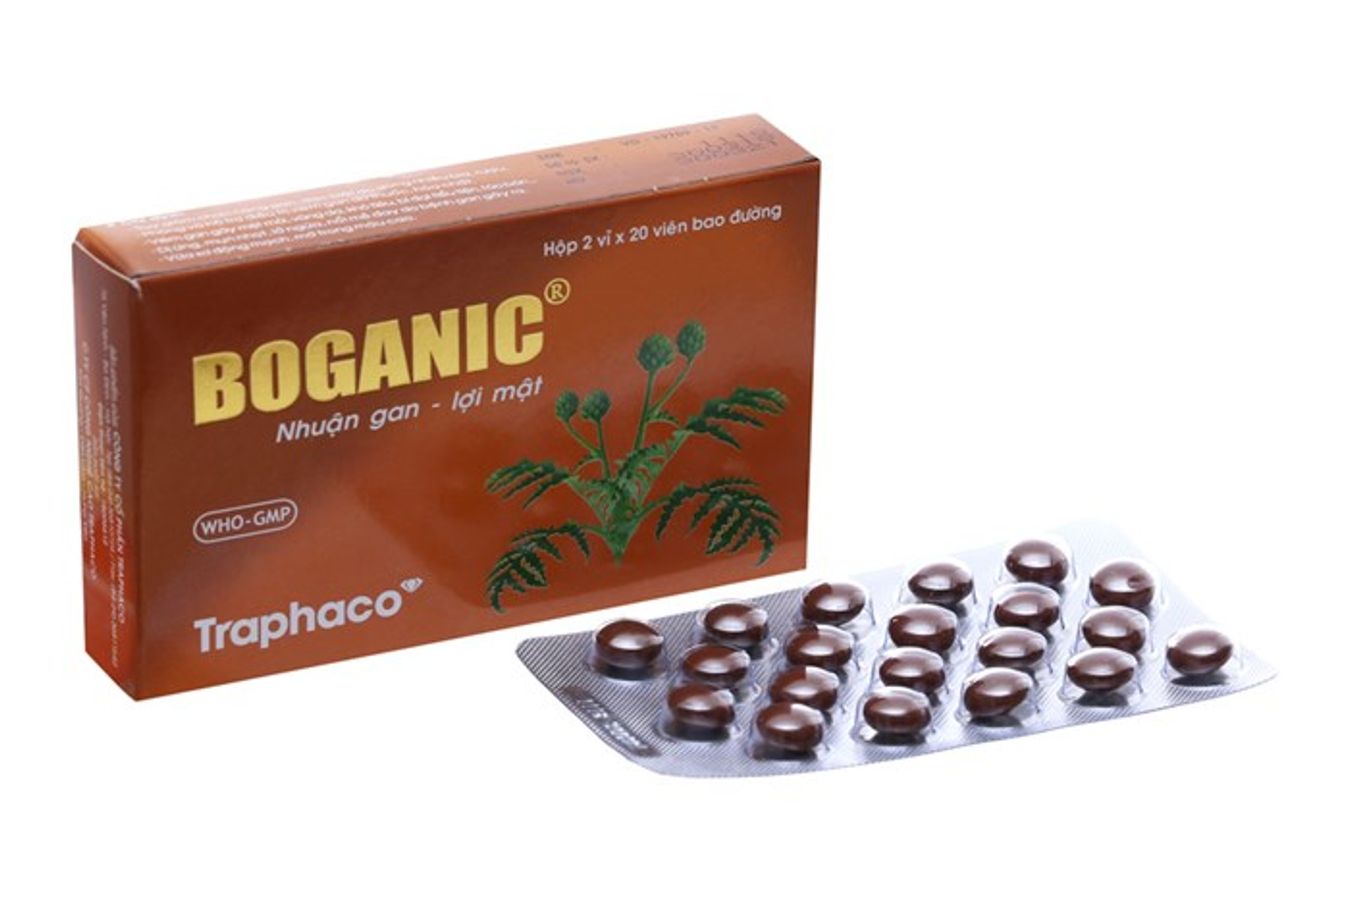 Boganic Traphaco - Bổ gan, giải độc viên bao đường hộp 2 vỉ